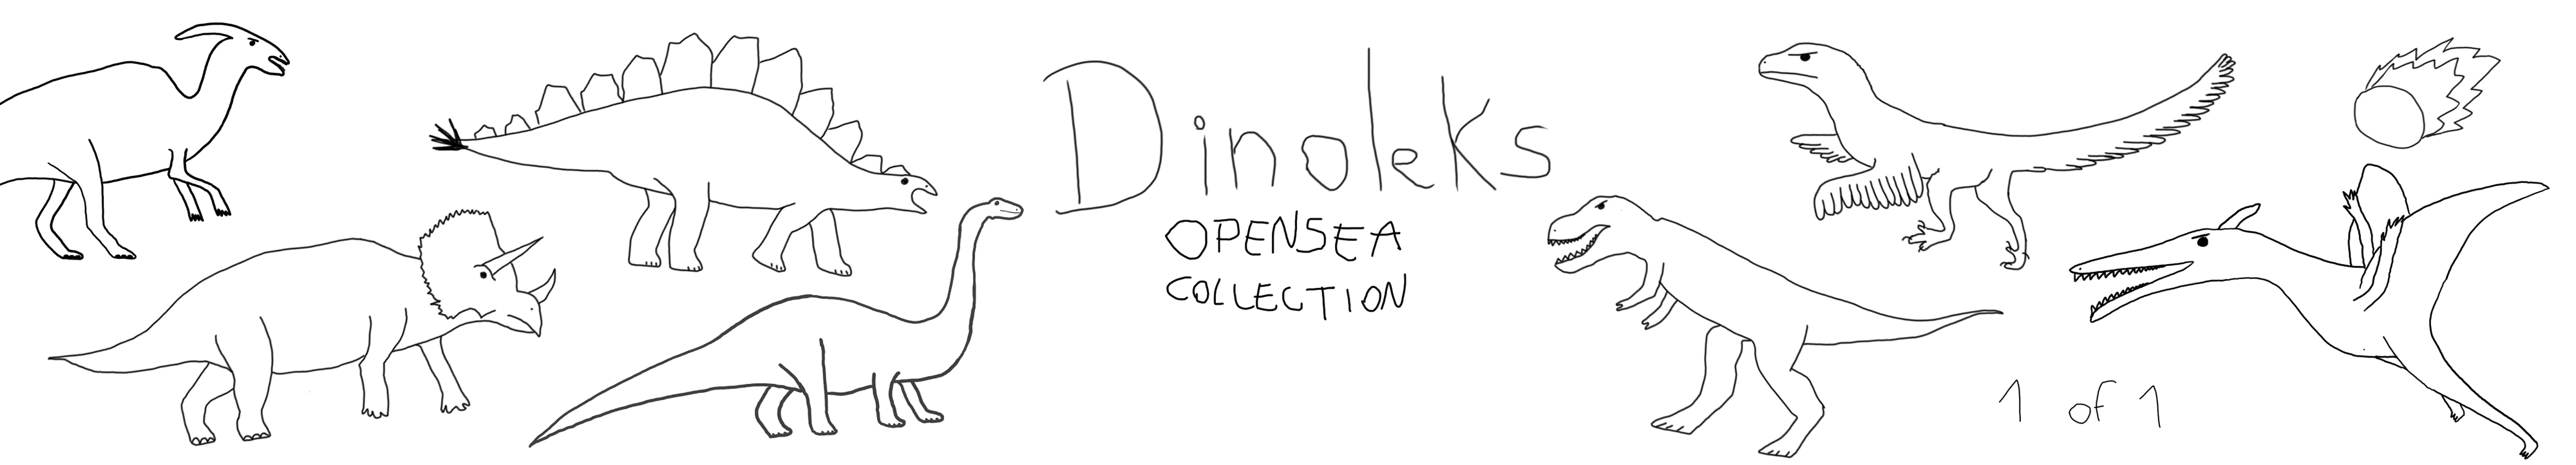 Dinoleks banner